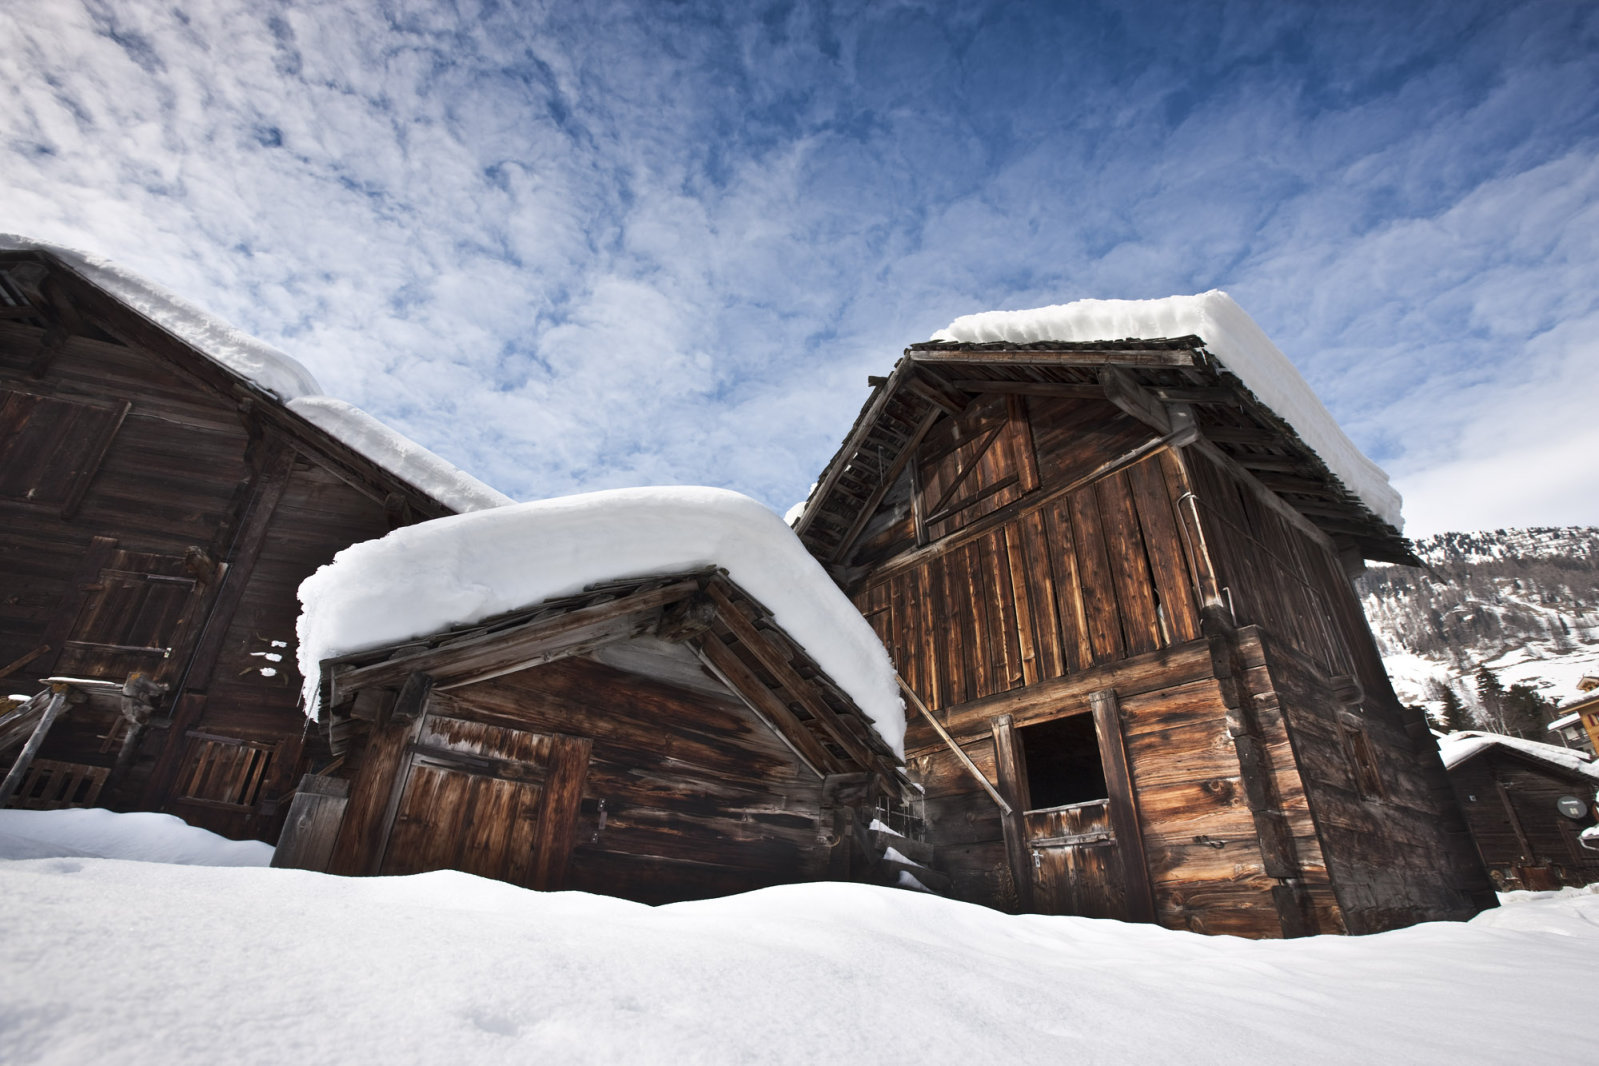 A nap sötétre festette a ház gerendáit - ilyen egy alpesi falu Svájcban